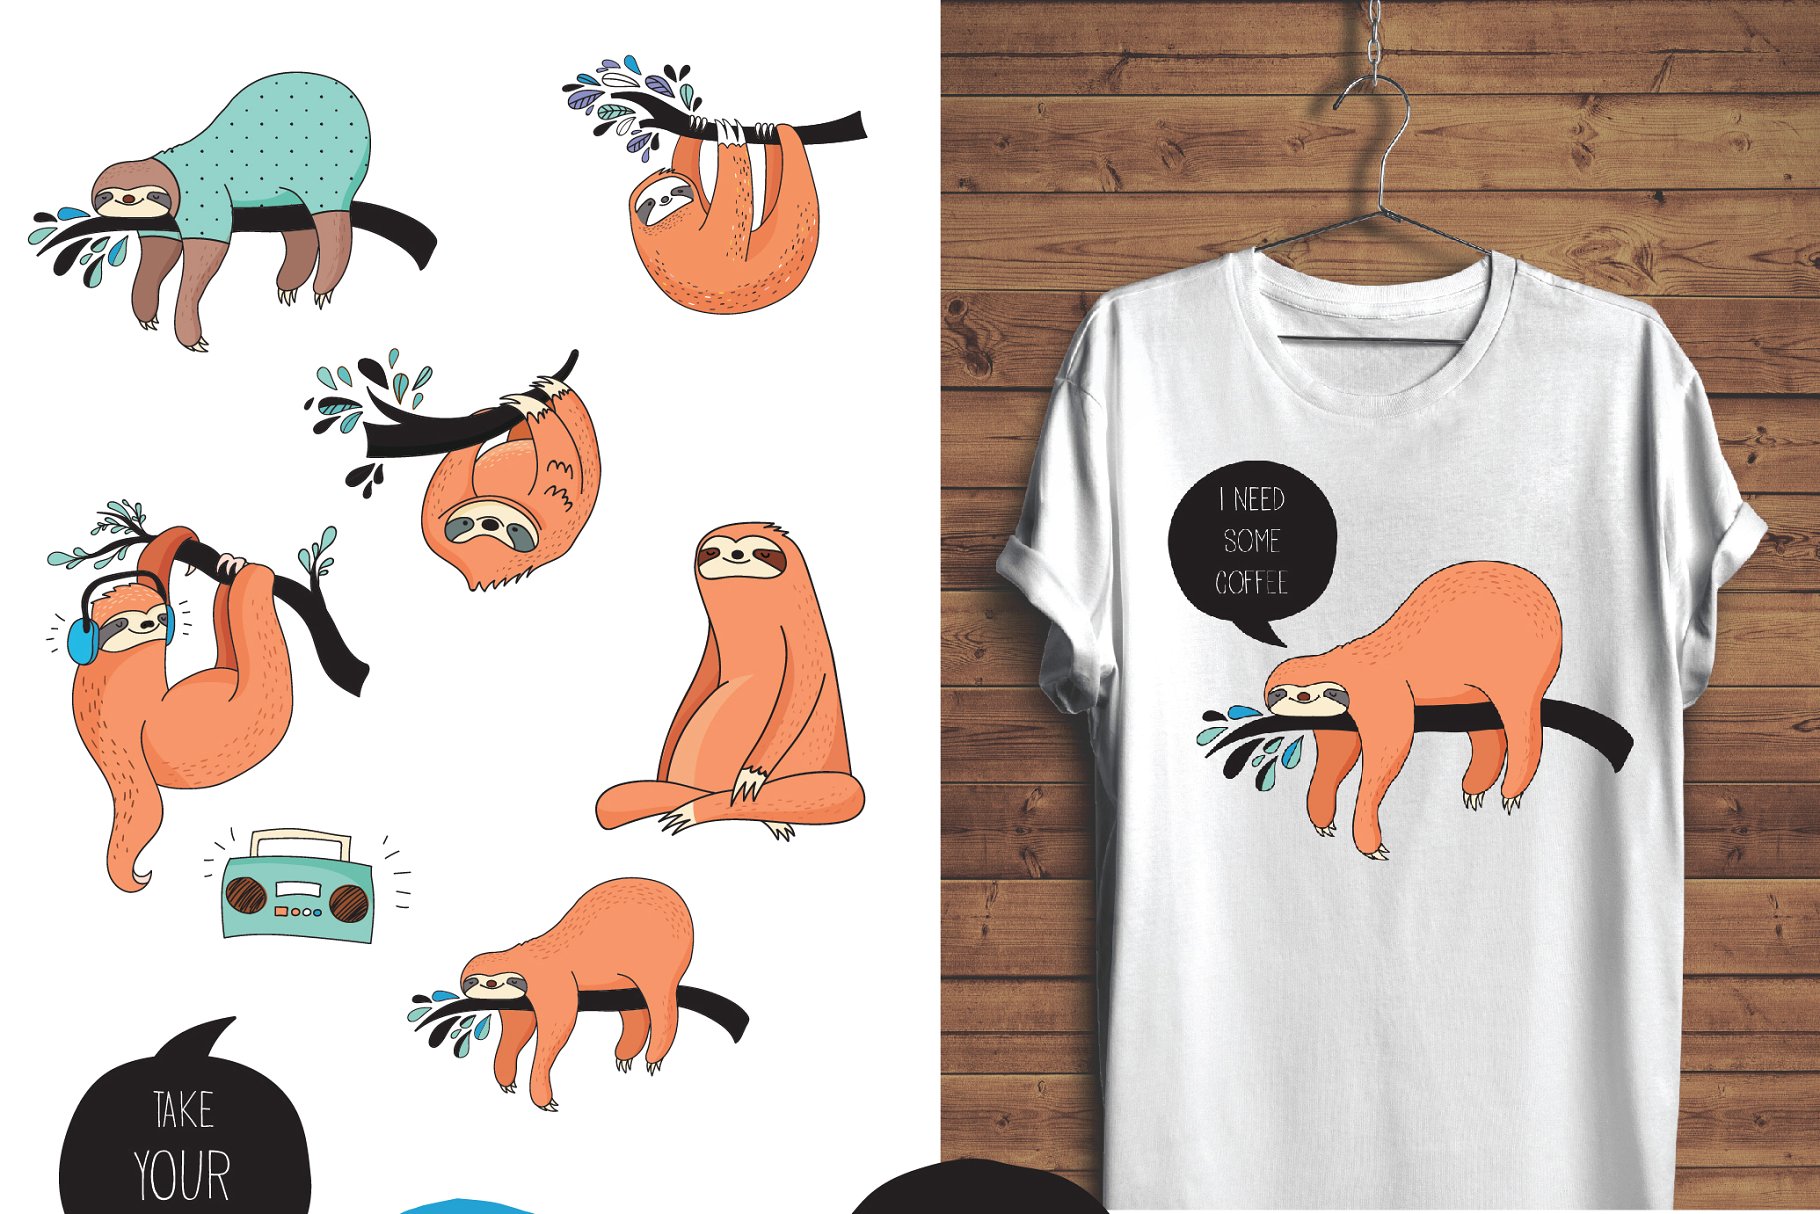 可爱的树懒图标、卡片、图案 Cute sloths icons, cards, patterns插图(1)